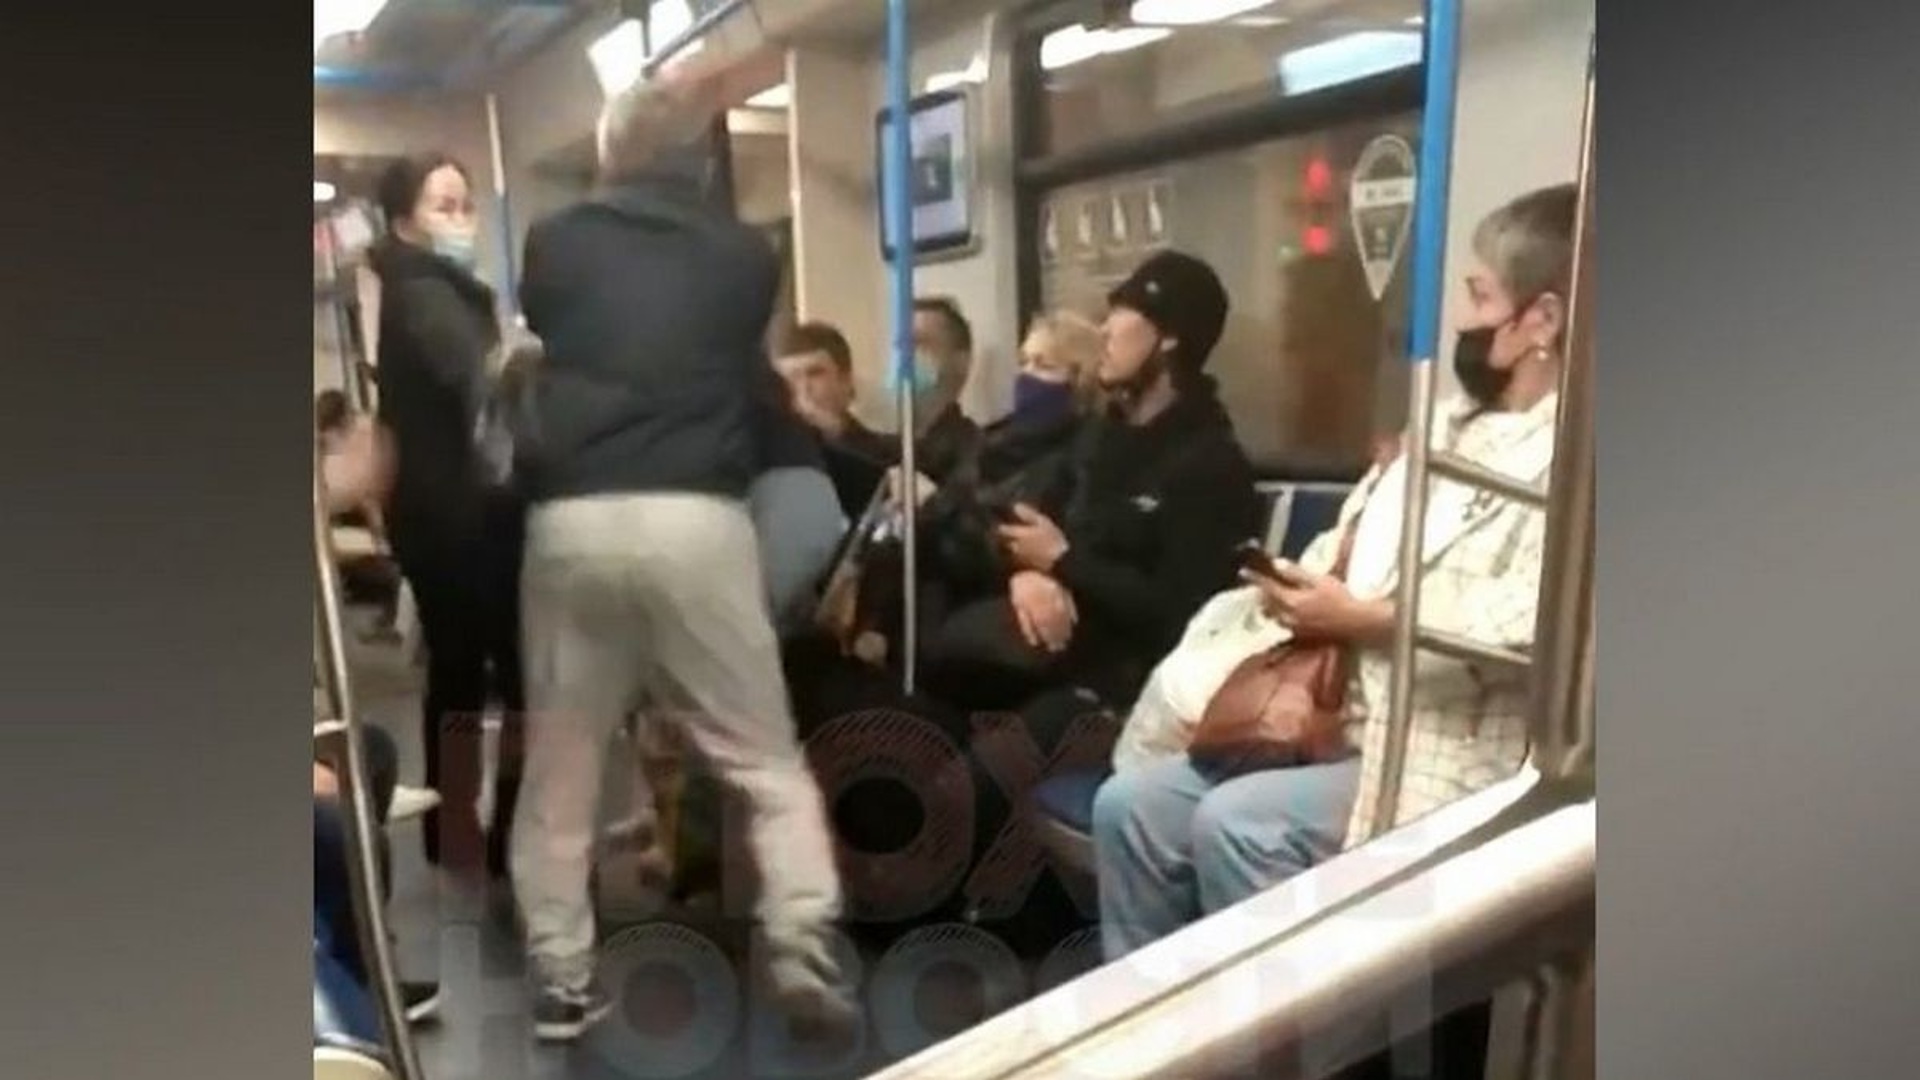 мигранты в московском метро